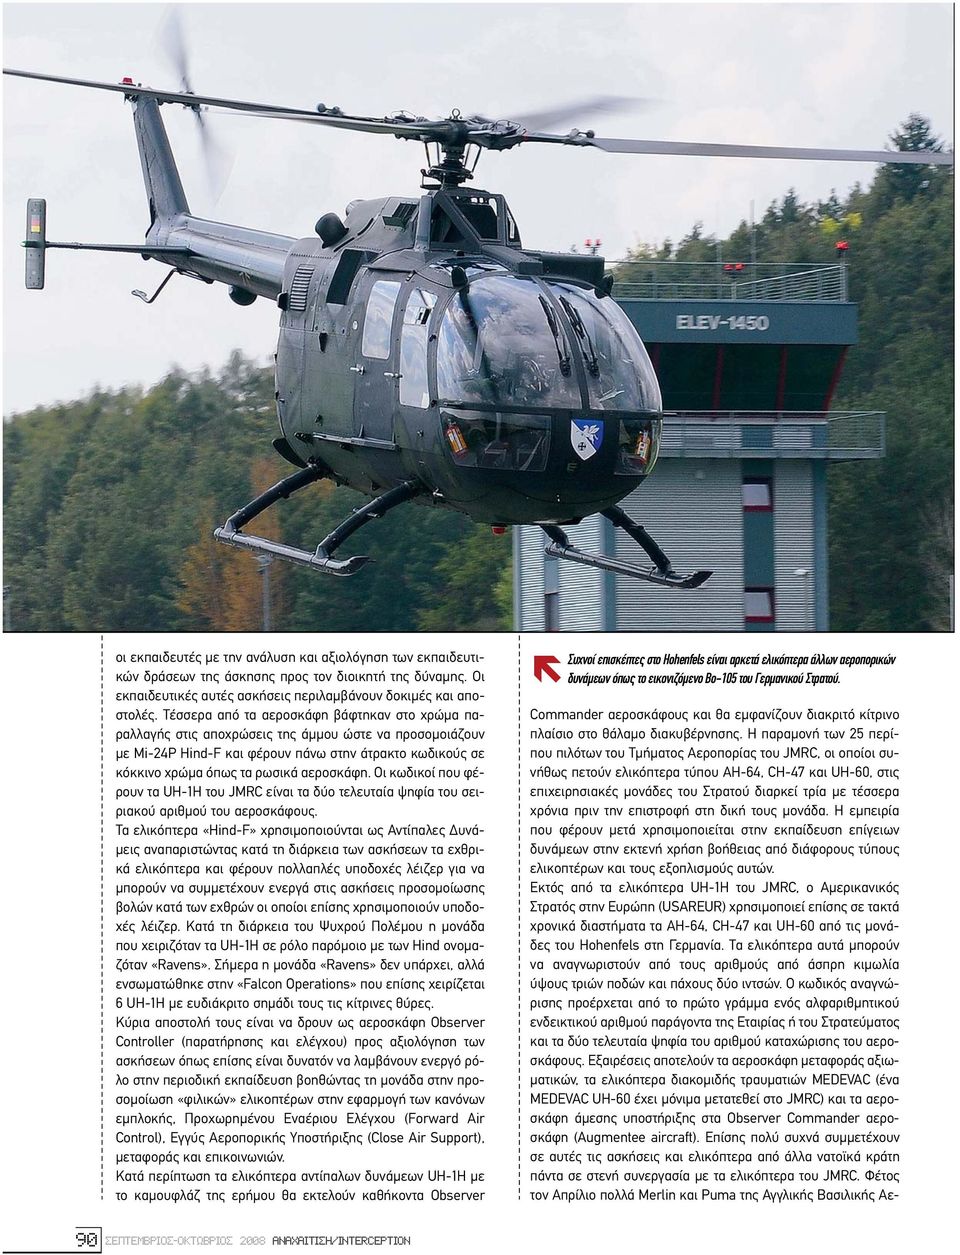 Οι κωδικοί που φέρουν τα UH-1H του JMRC είναι τα δύο τελευταία ψηφία του σειριακού αριθµού του αεροσκάφους.